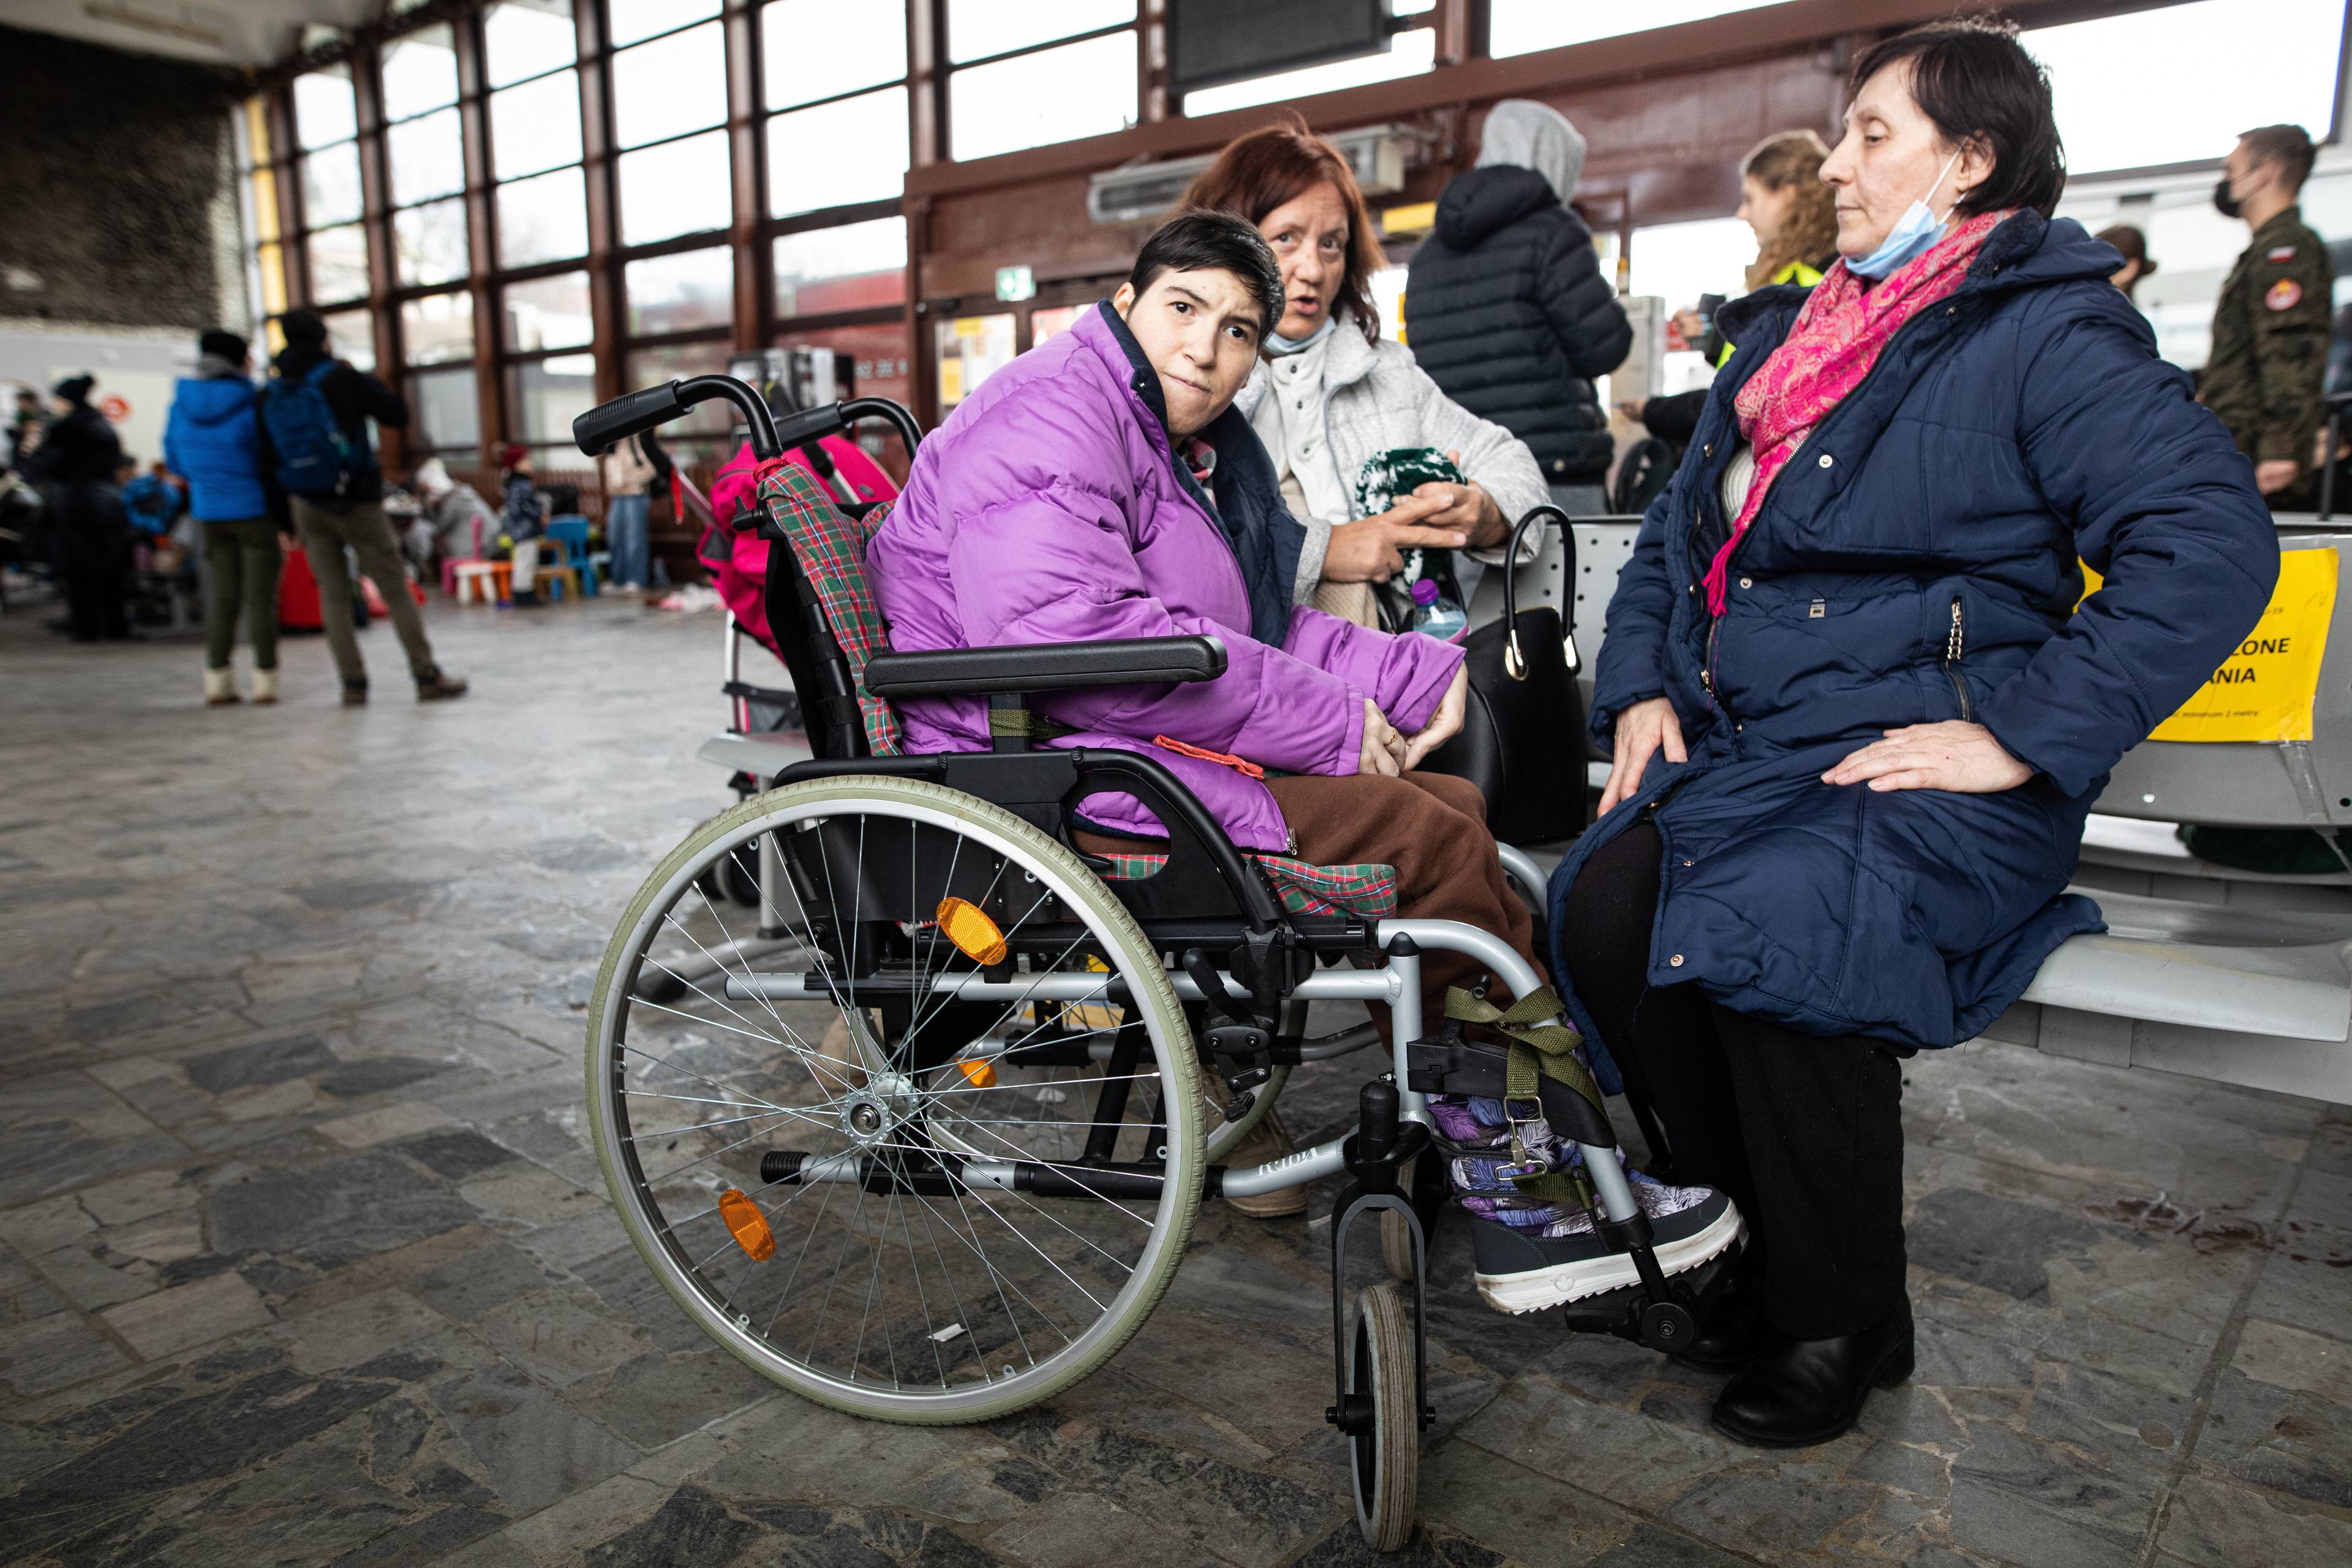 Na zdjęciu jest trzy kobiety. Jedna z nich siedzi w wózku inwalidzkim. Jest ubrana w kurtkę fioletową.